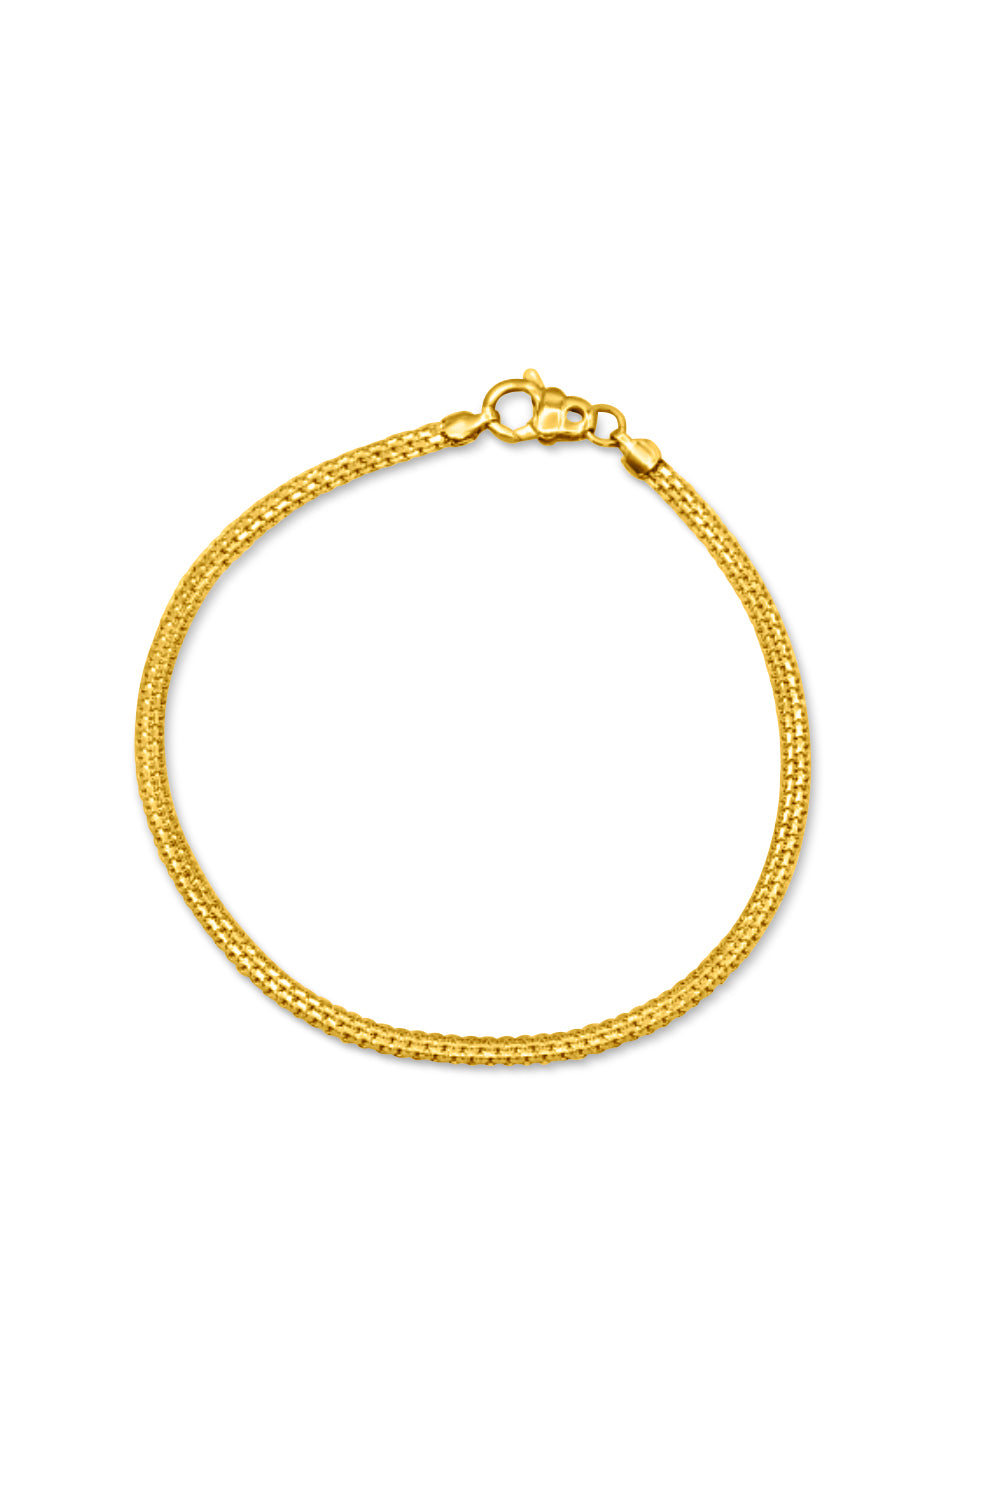 Gold fancy Mens Bracelet 22k purity,Weight-14.600gm Approx – Asdelo